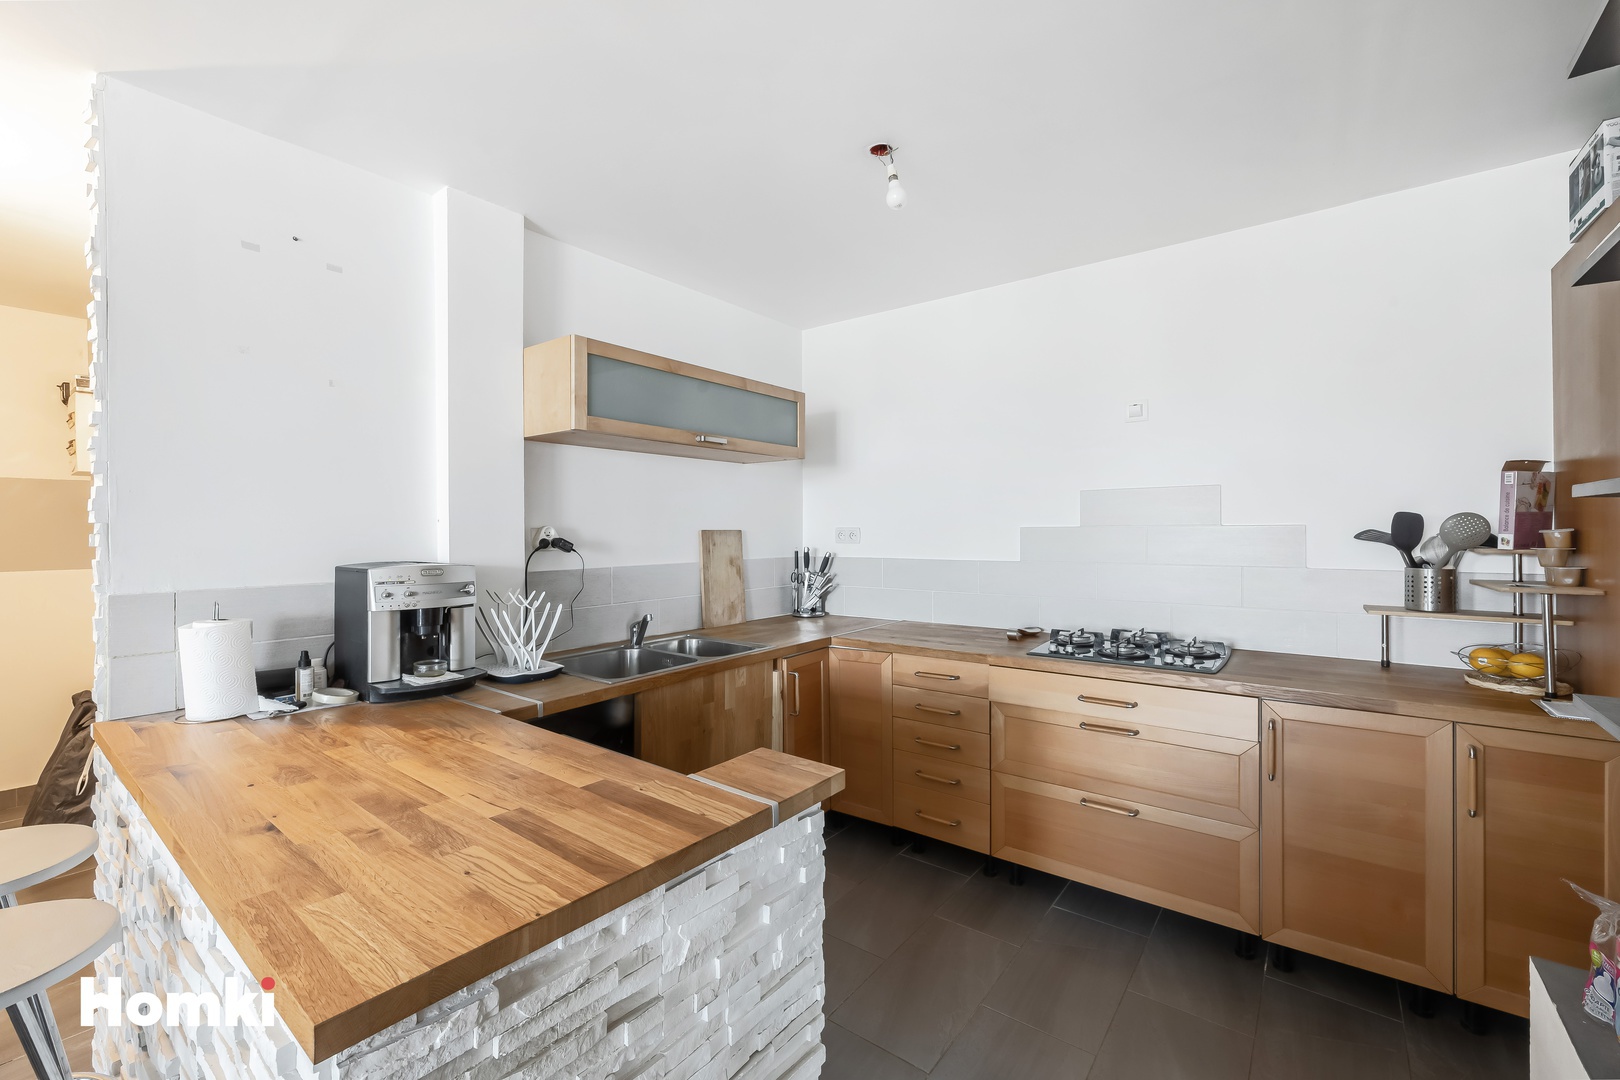 Homki - Vente Appartement  de 78.0 m² à Marignane 13700